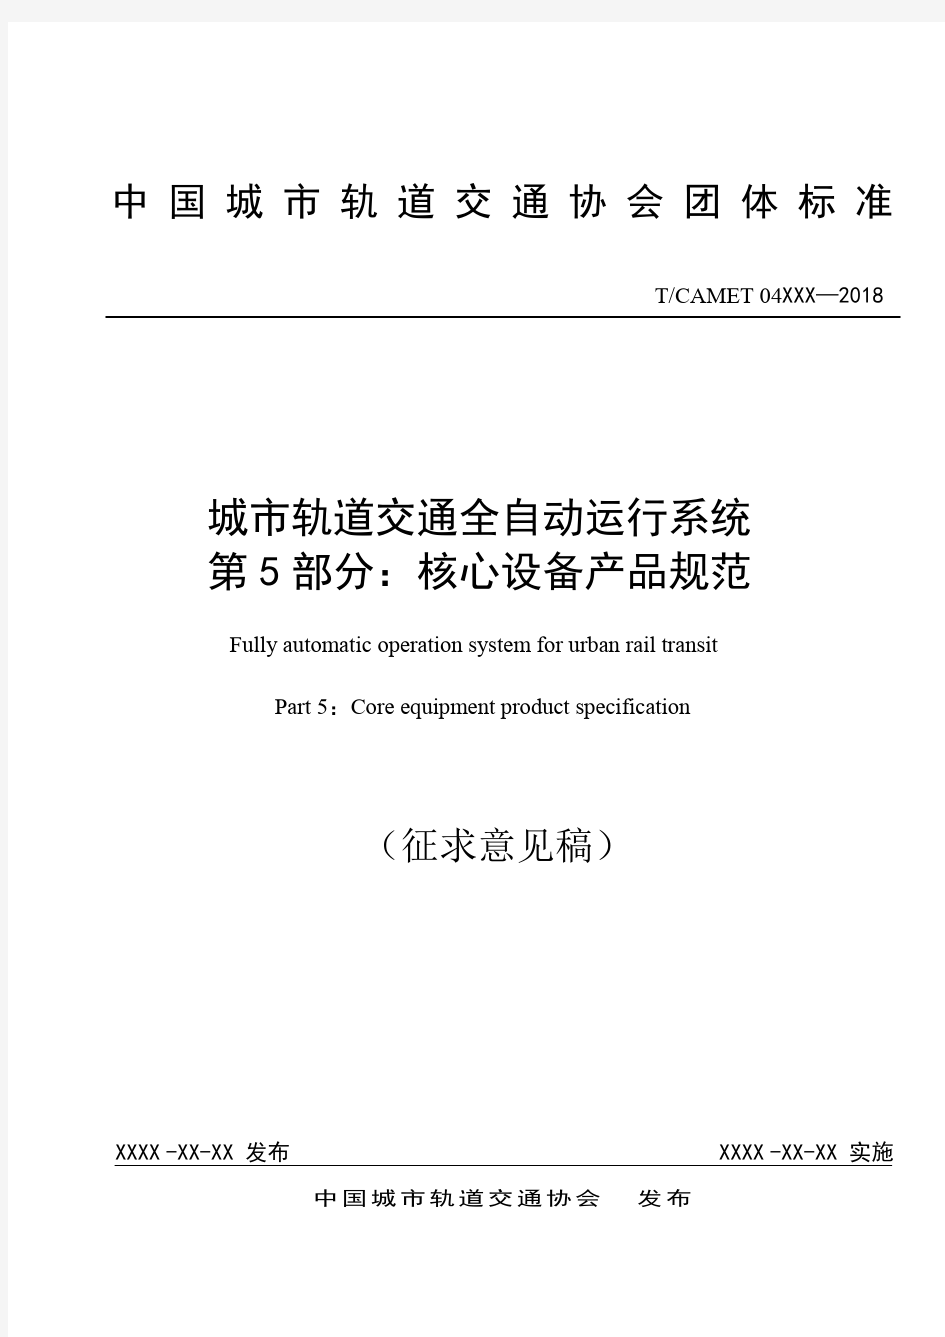 中国城轨道交通协会团体标准